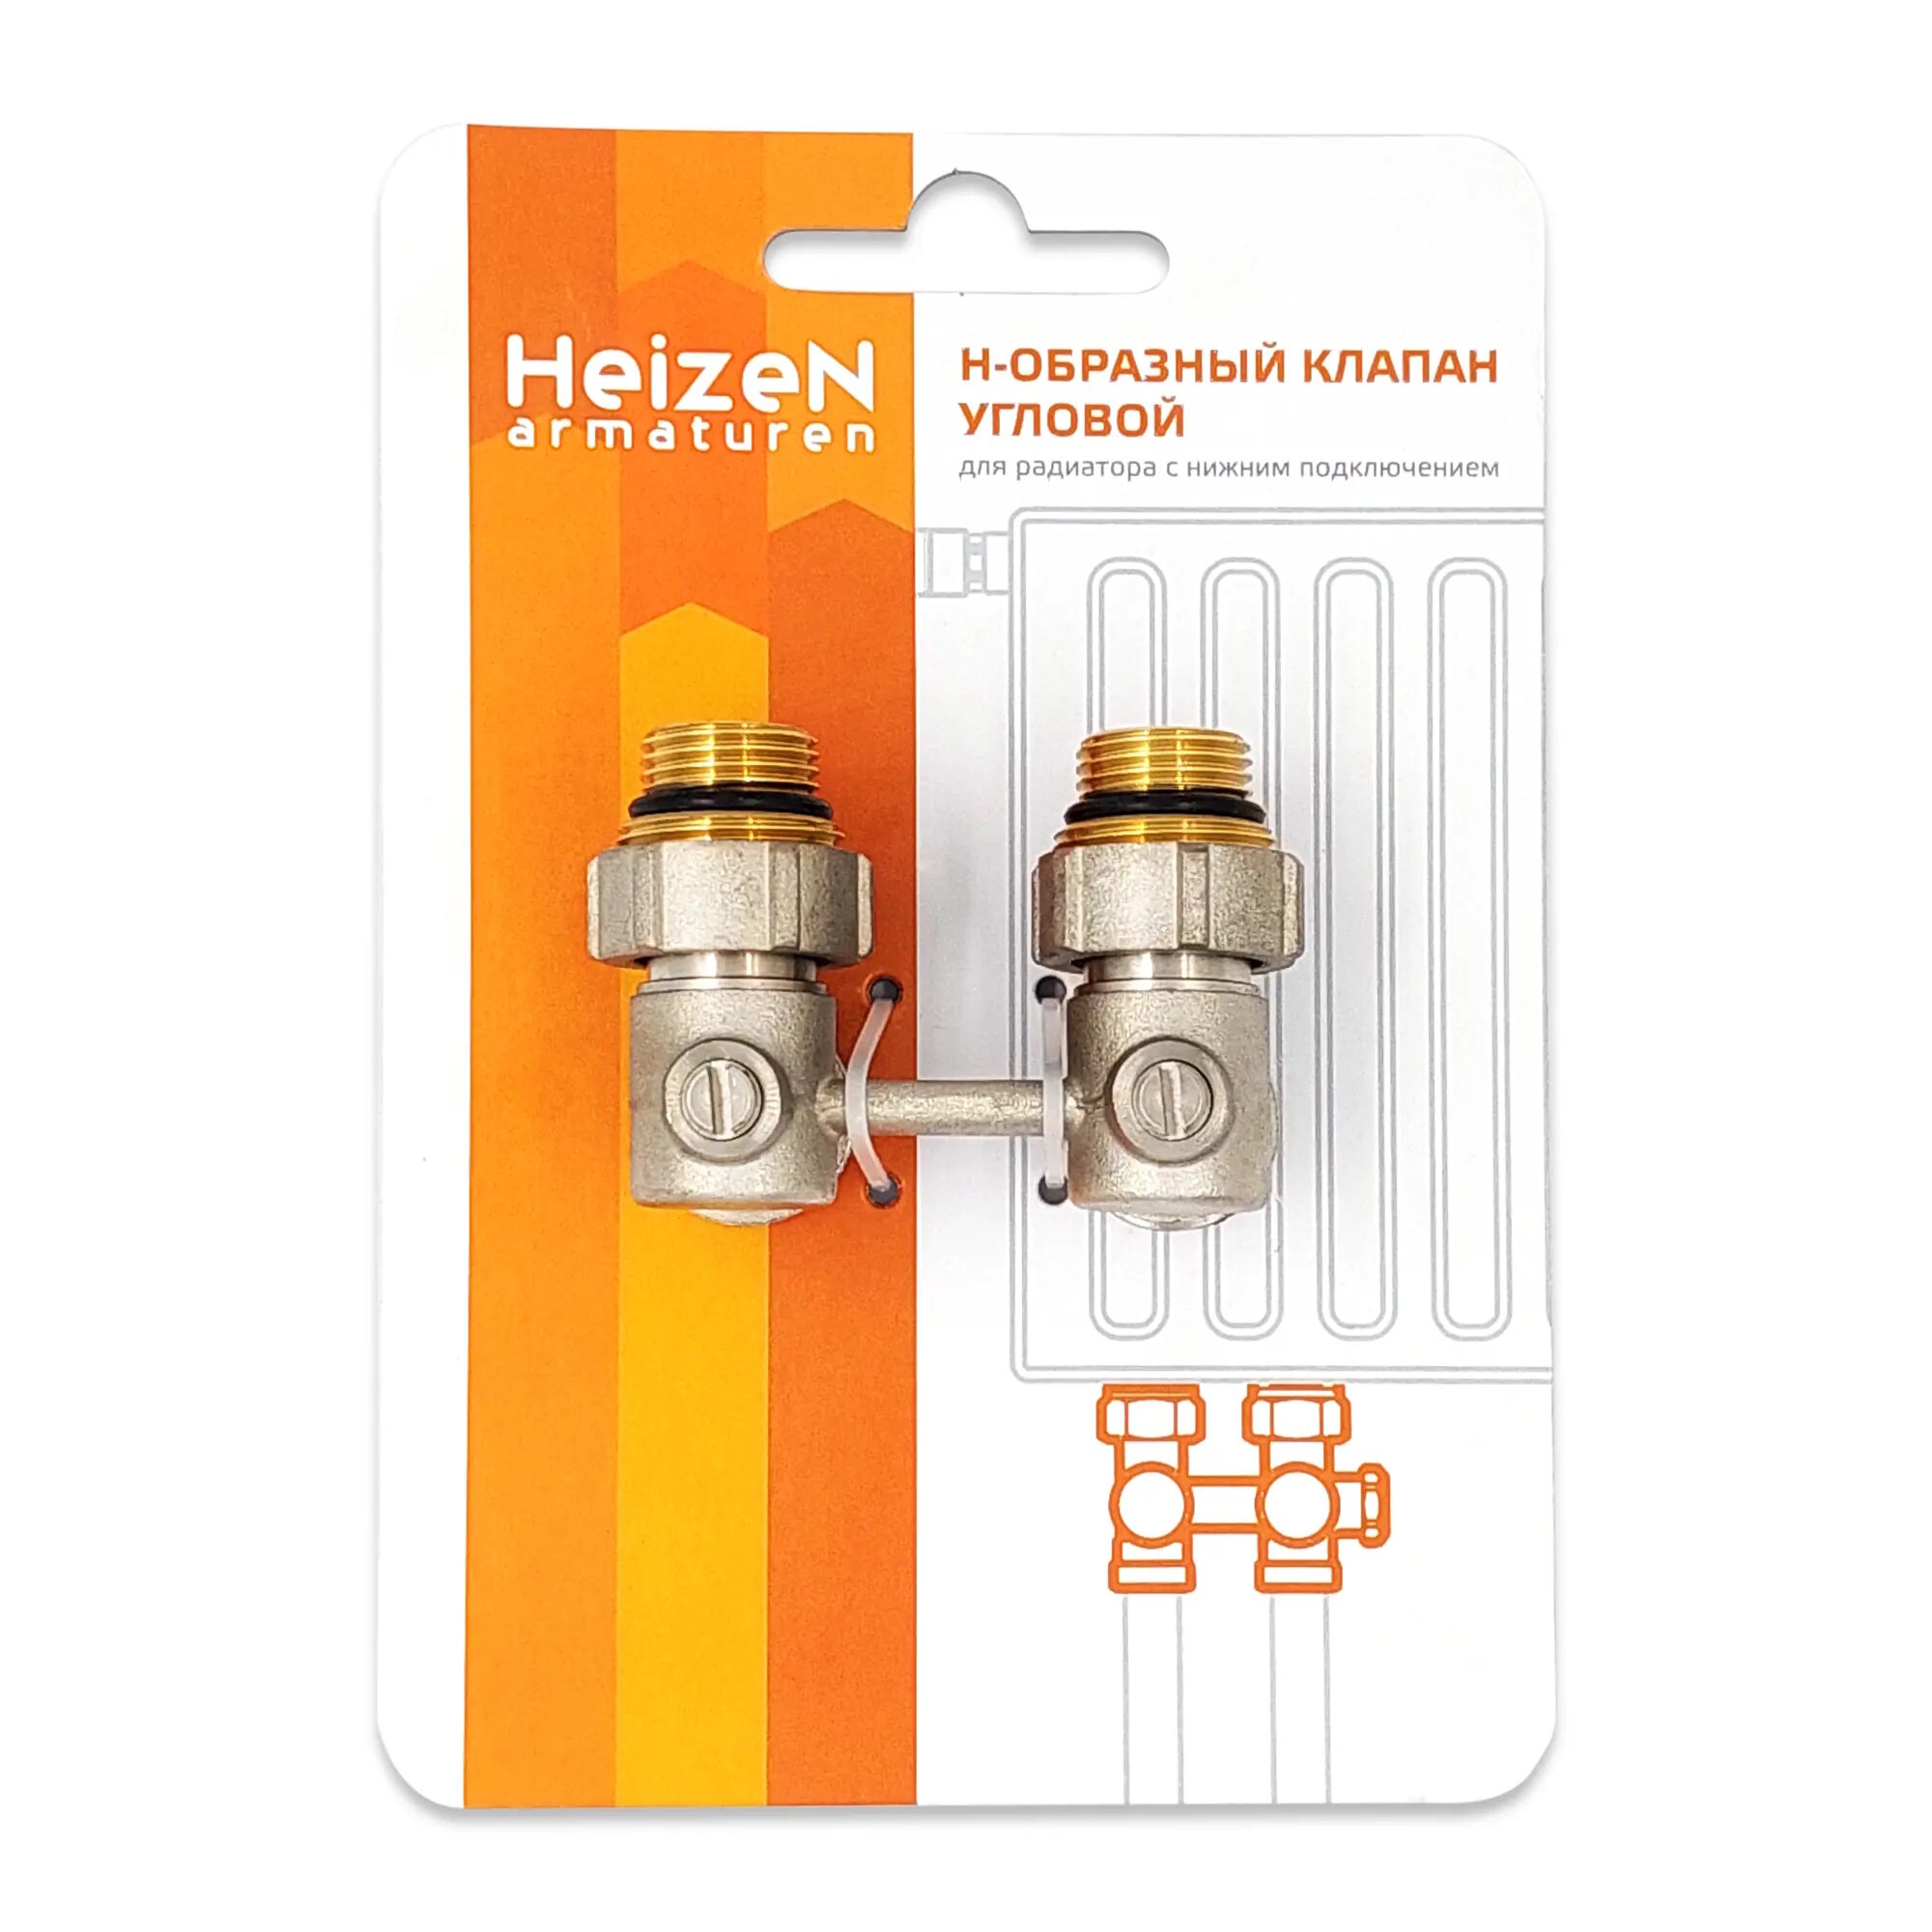 Клапан запорный Н-образный Heizen 1/2" угловой, для радиаторов с нижним подключением - фото №5